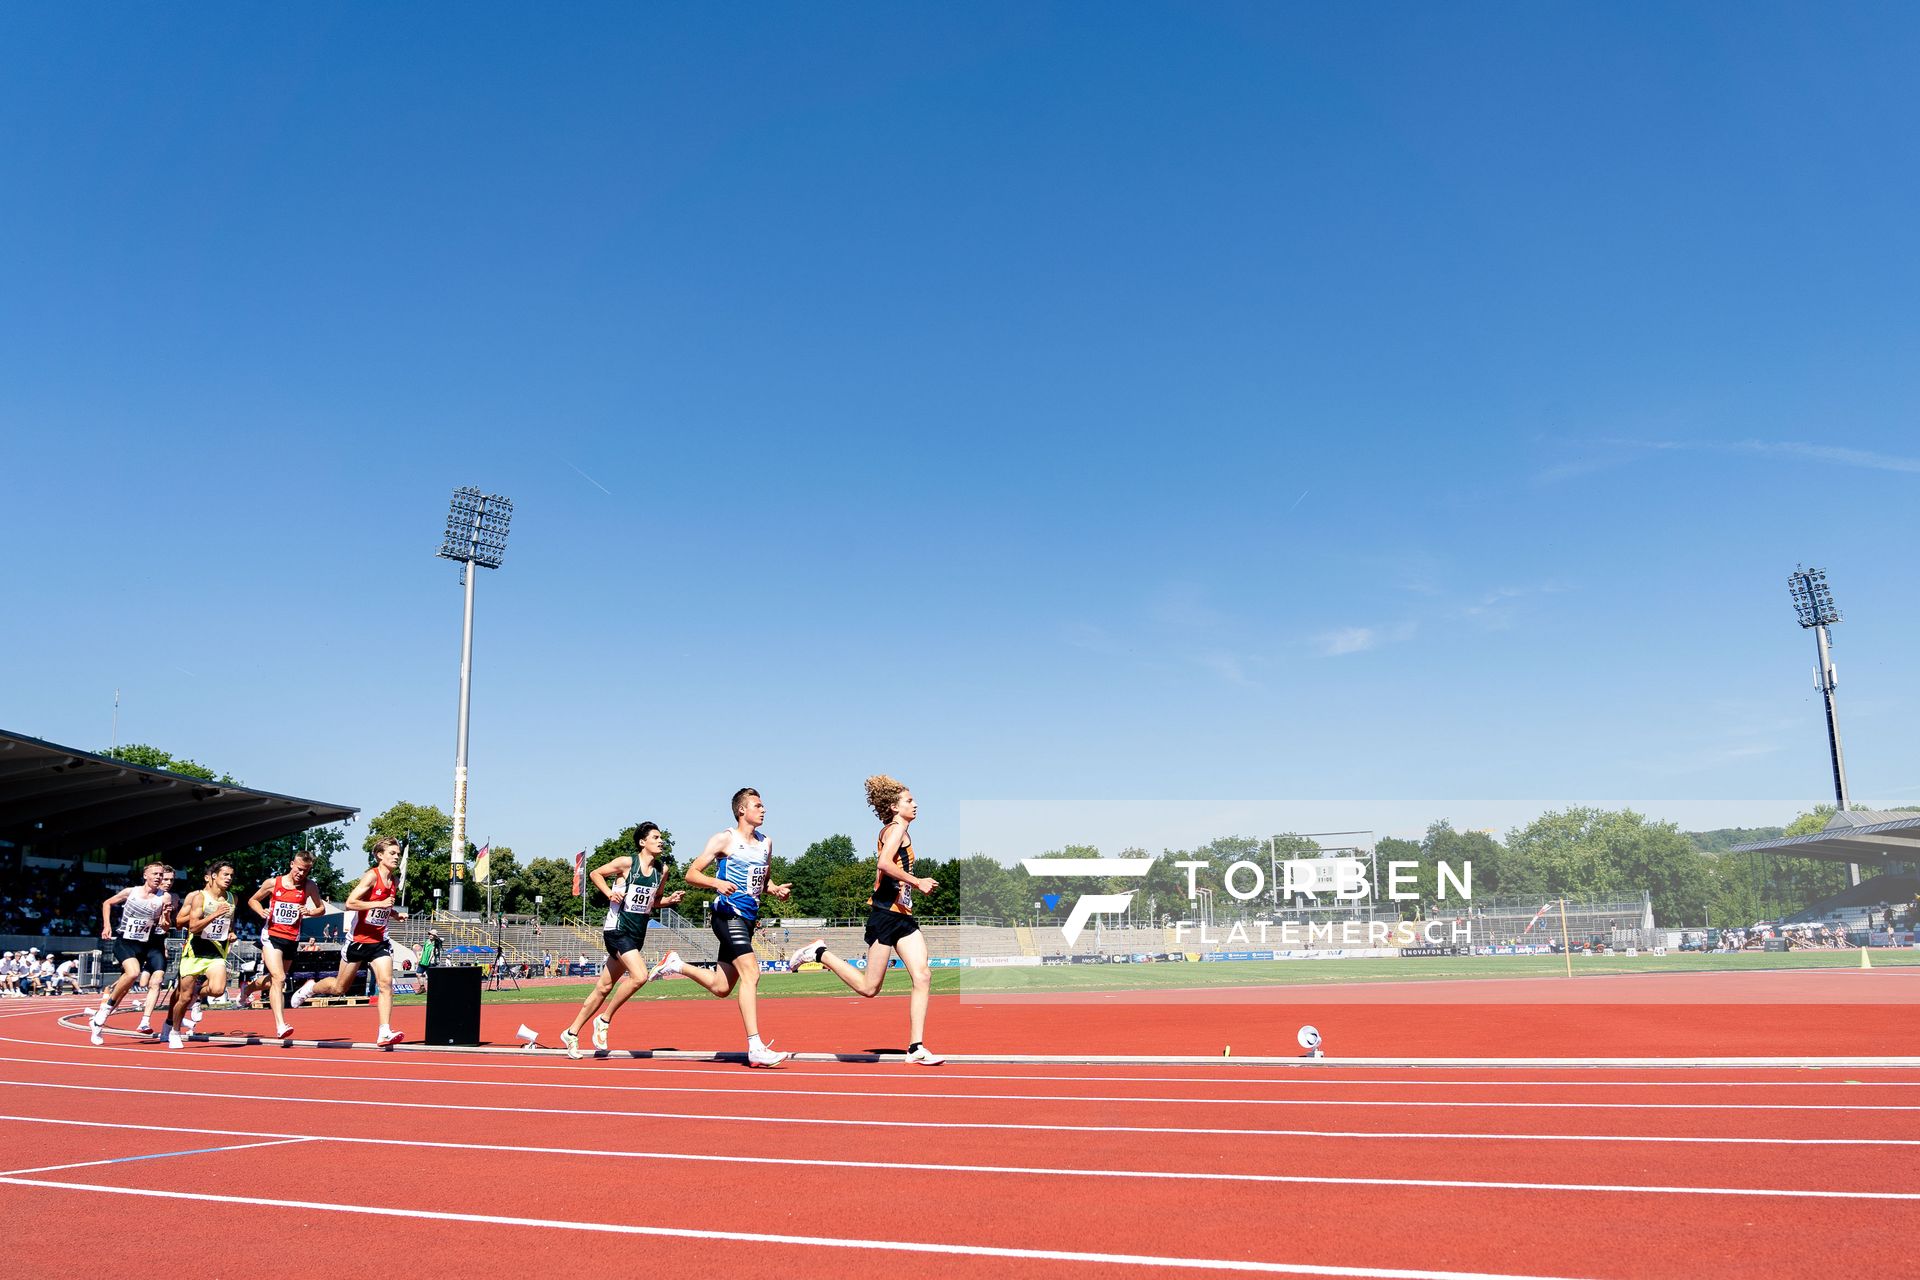 Jonas Kulgemeyer (OTB Osnabrueck) ueber 3000m am 17.07.2022 waehrend den deutschen Leichtathletik-Jugendmeisterschaften 2022 in Ulm